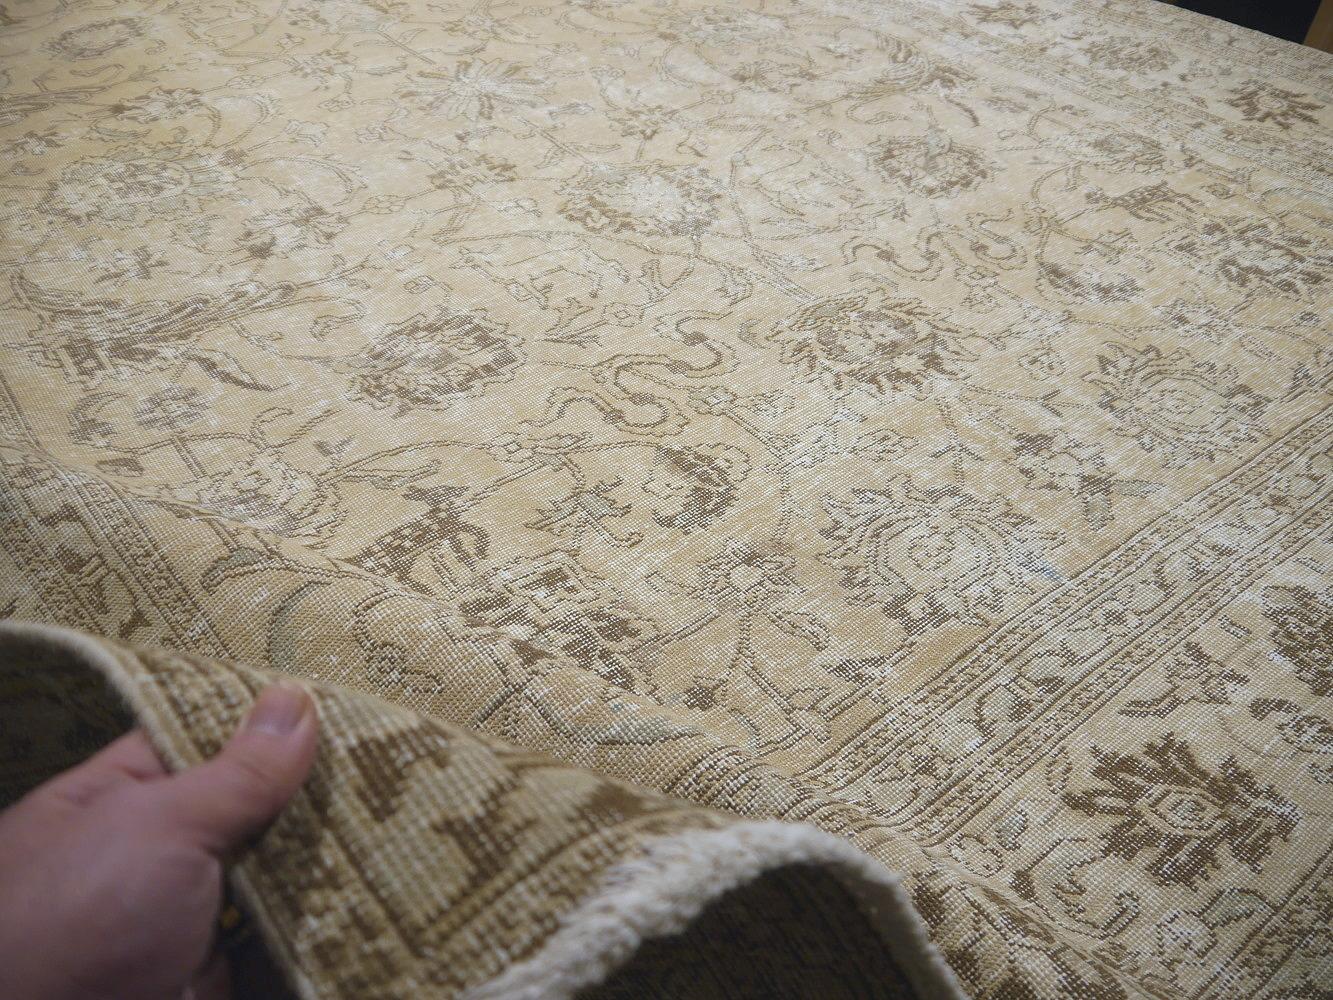 Tapis Tabriz classique tapis vintage gris feutré beige marron noué à la main neutre

Magnifique tapis ancien dans le style de Tabriz - Collection Djoharian

Ce tapis a été réalisé avec un design traditionnel décoratif. Le style rappelle les tapis de